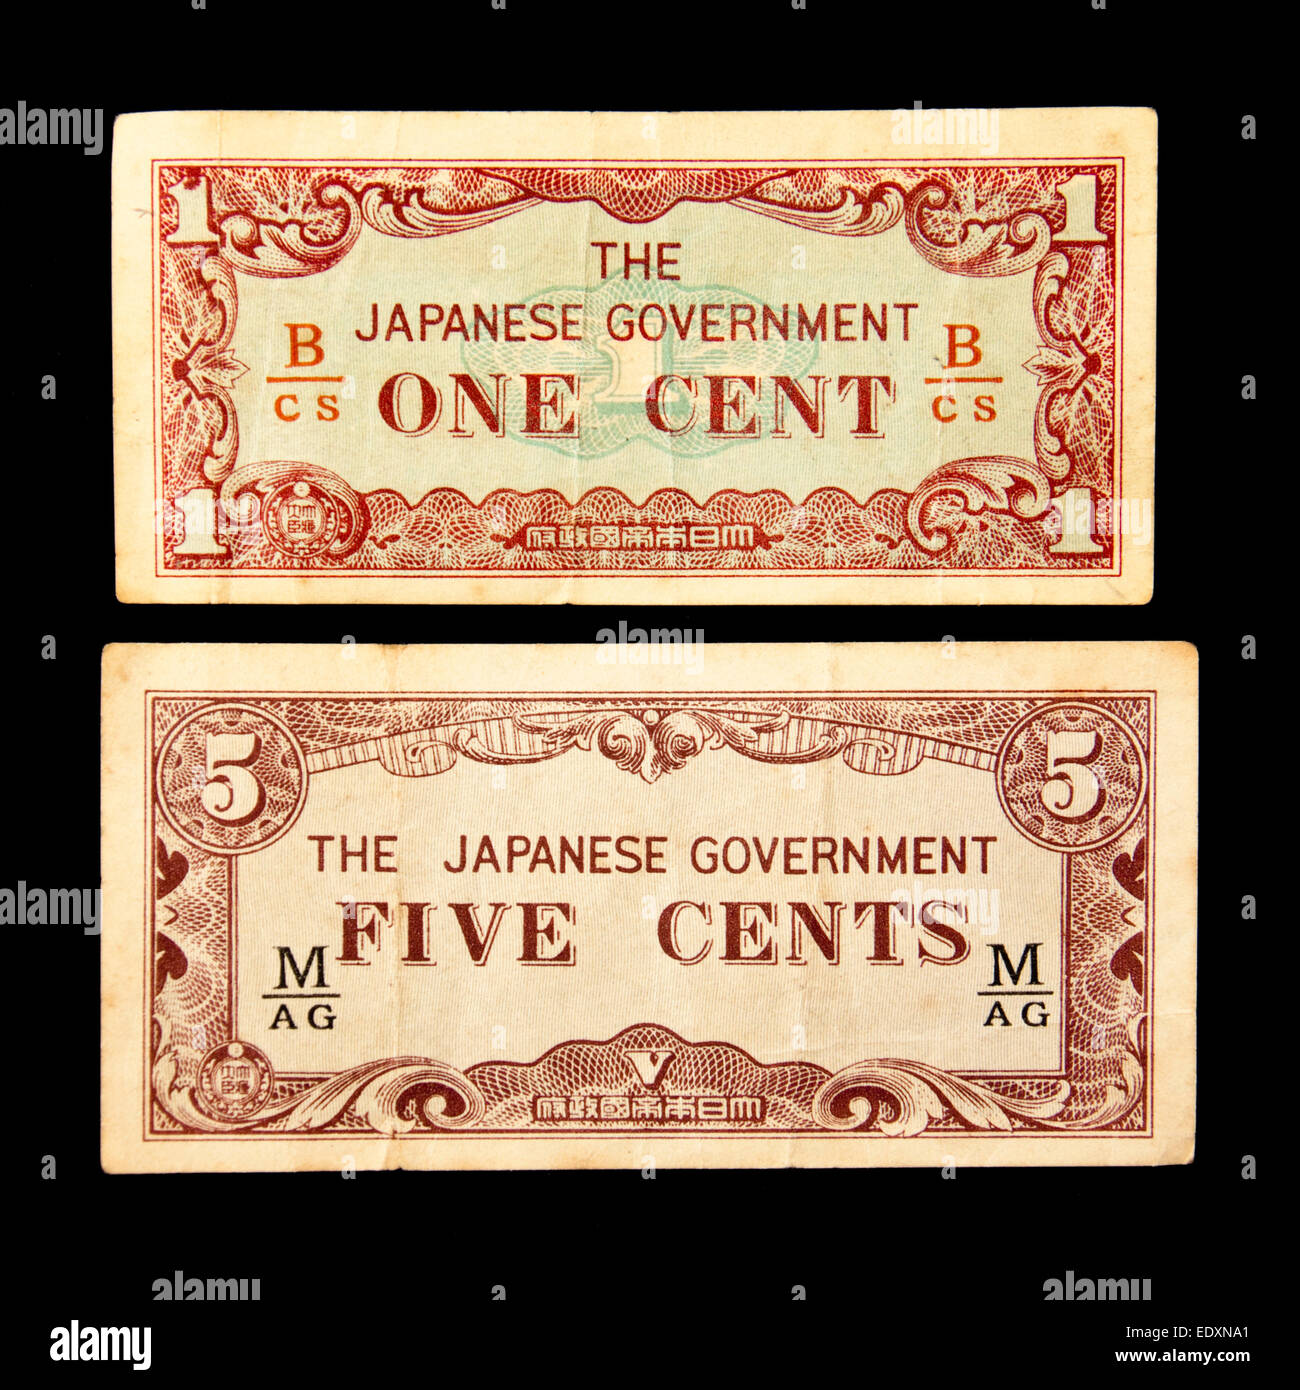 Paar Vintage WW2 Banknoten von der japanischen Regierung, besser bekannt als "Japanische Invasion Geld" (September 1942) Stockfoto